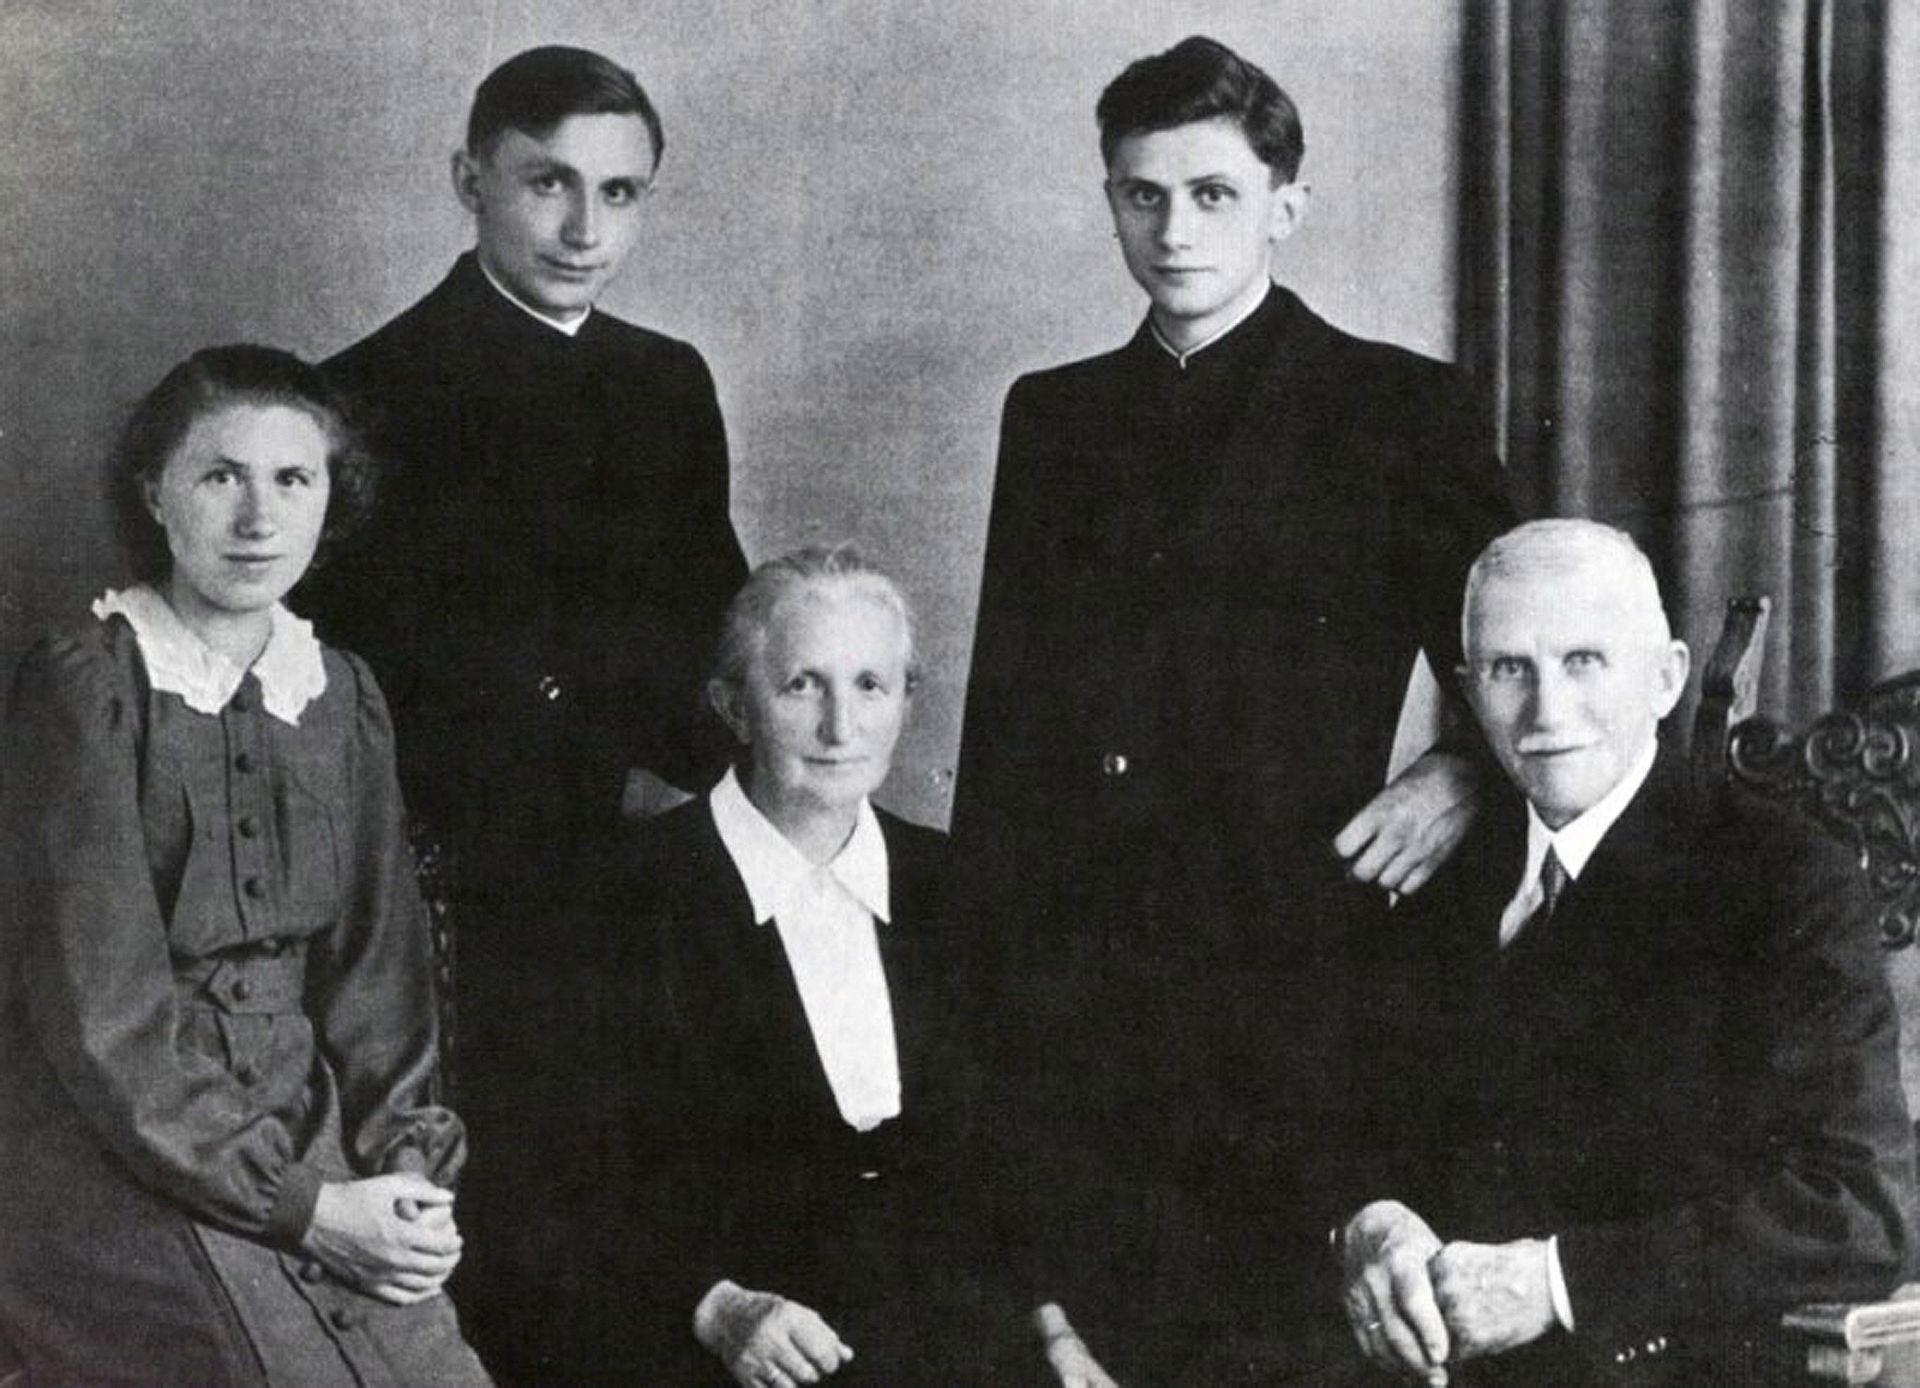 La famille Ratzinger en 1951 à Freising, en Bavière (Allemagne) – Joseph, le futur Benoît XVI, est en haut à droite.